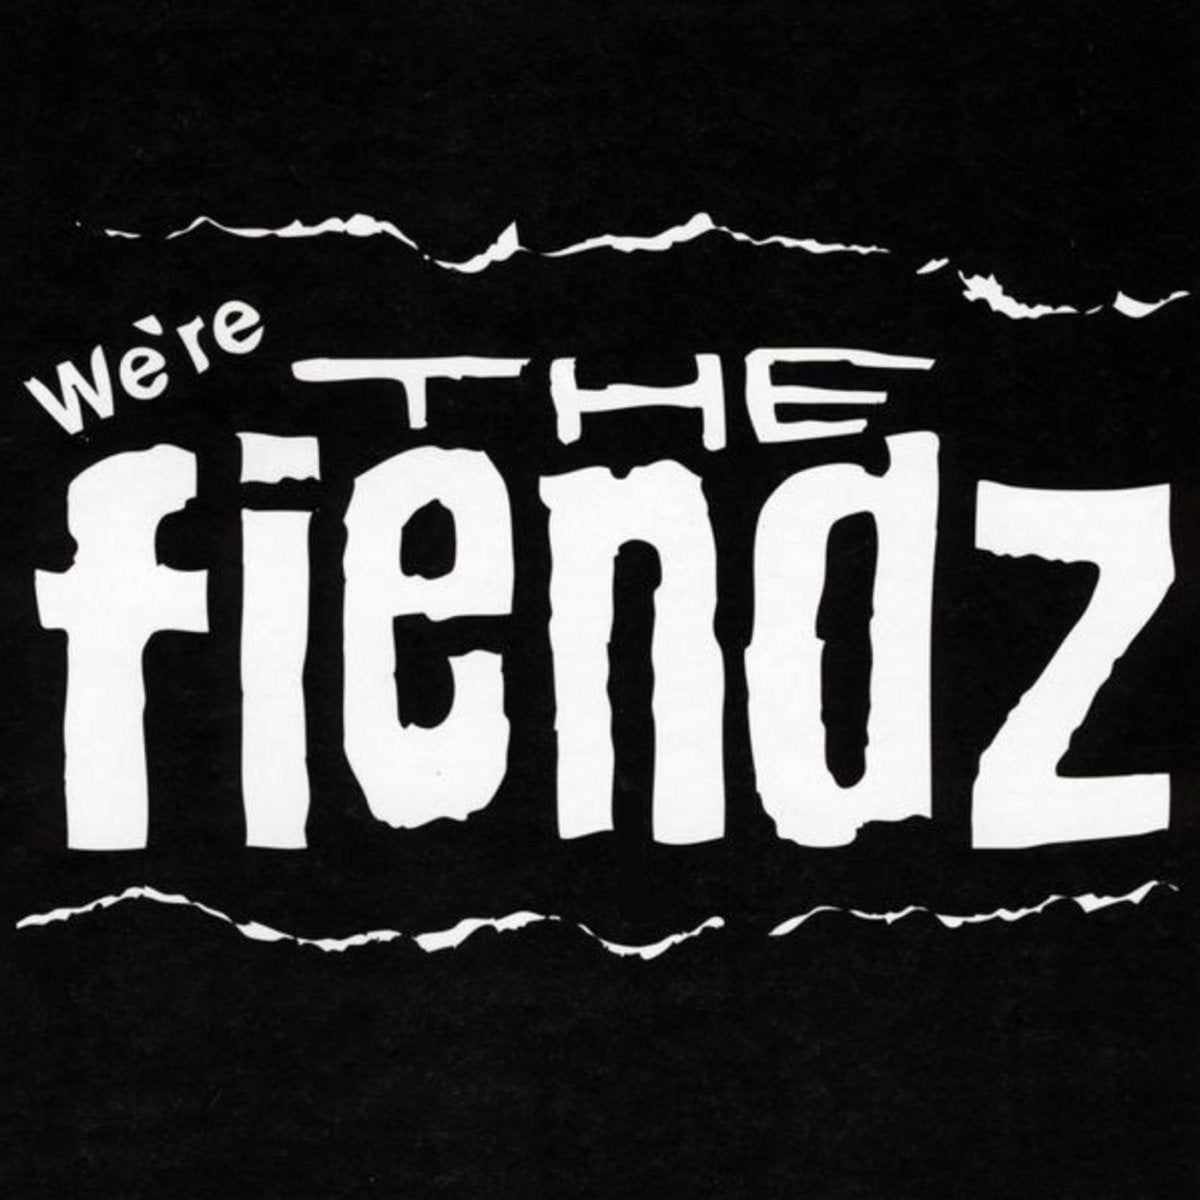 THE FIENDZ - "WE'RE THE FIENDZ" CD - INTO THE VOID Merch Co.